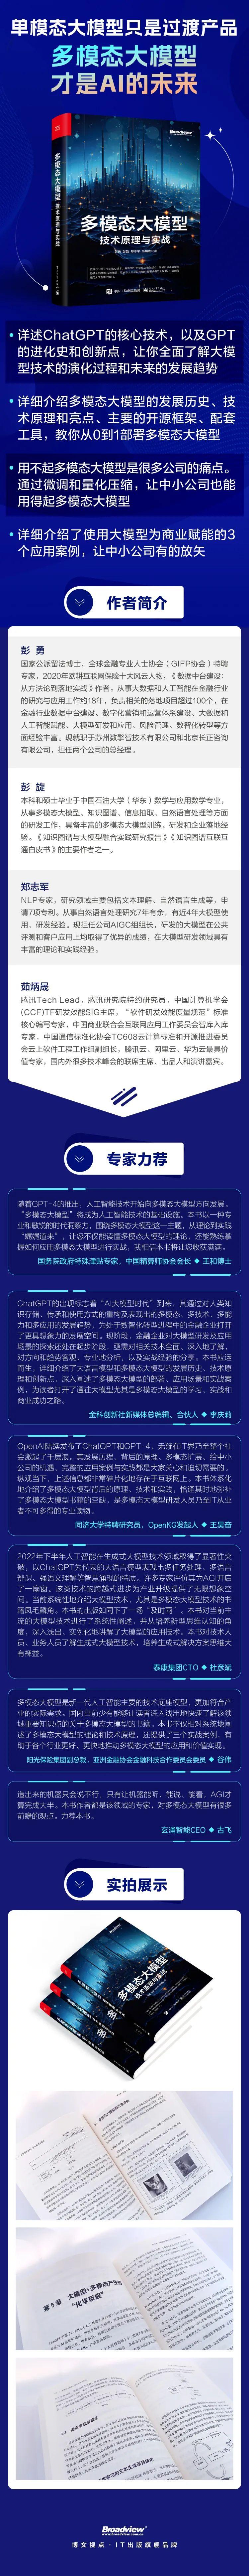 中文官方语言国家_telegreat中文官方_中文官方网站认证中心